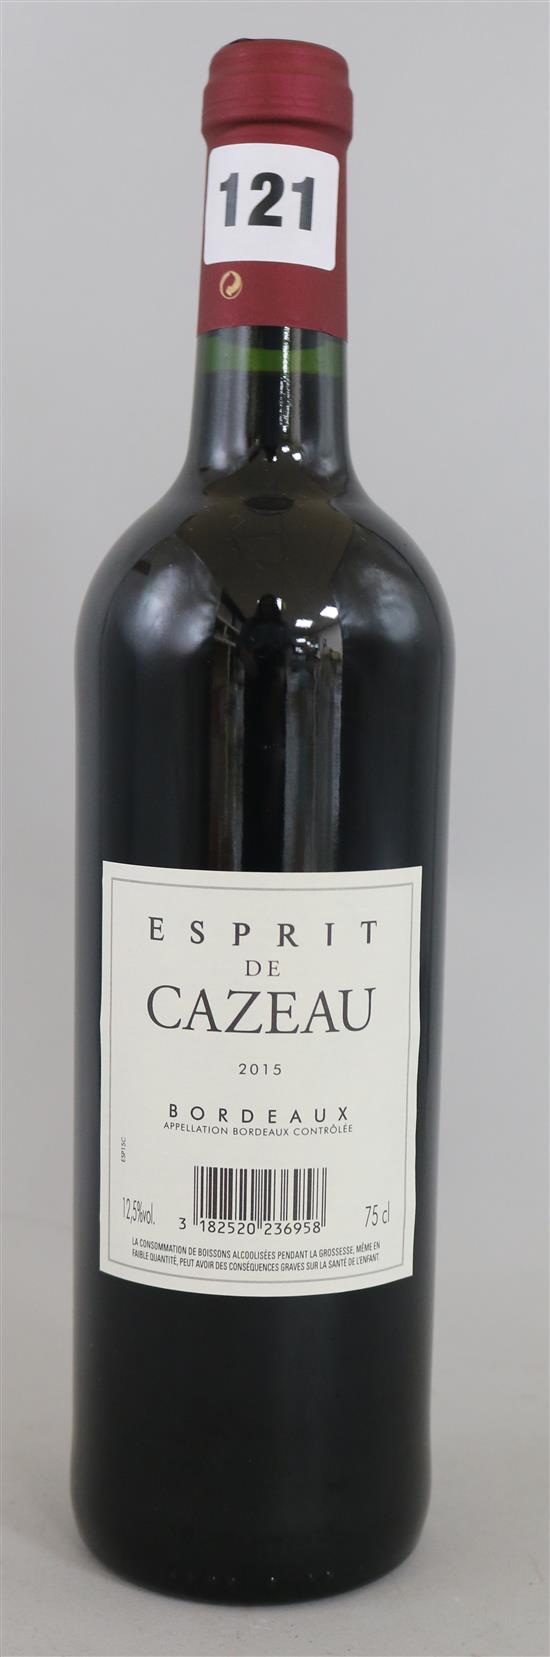 Ten bottles of Esprit de Cazeau Bordeaux